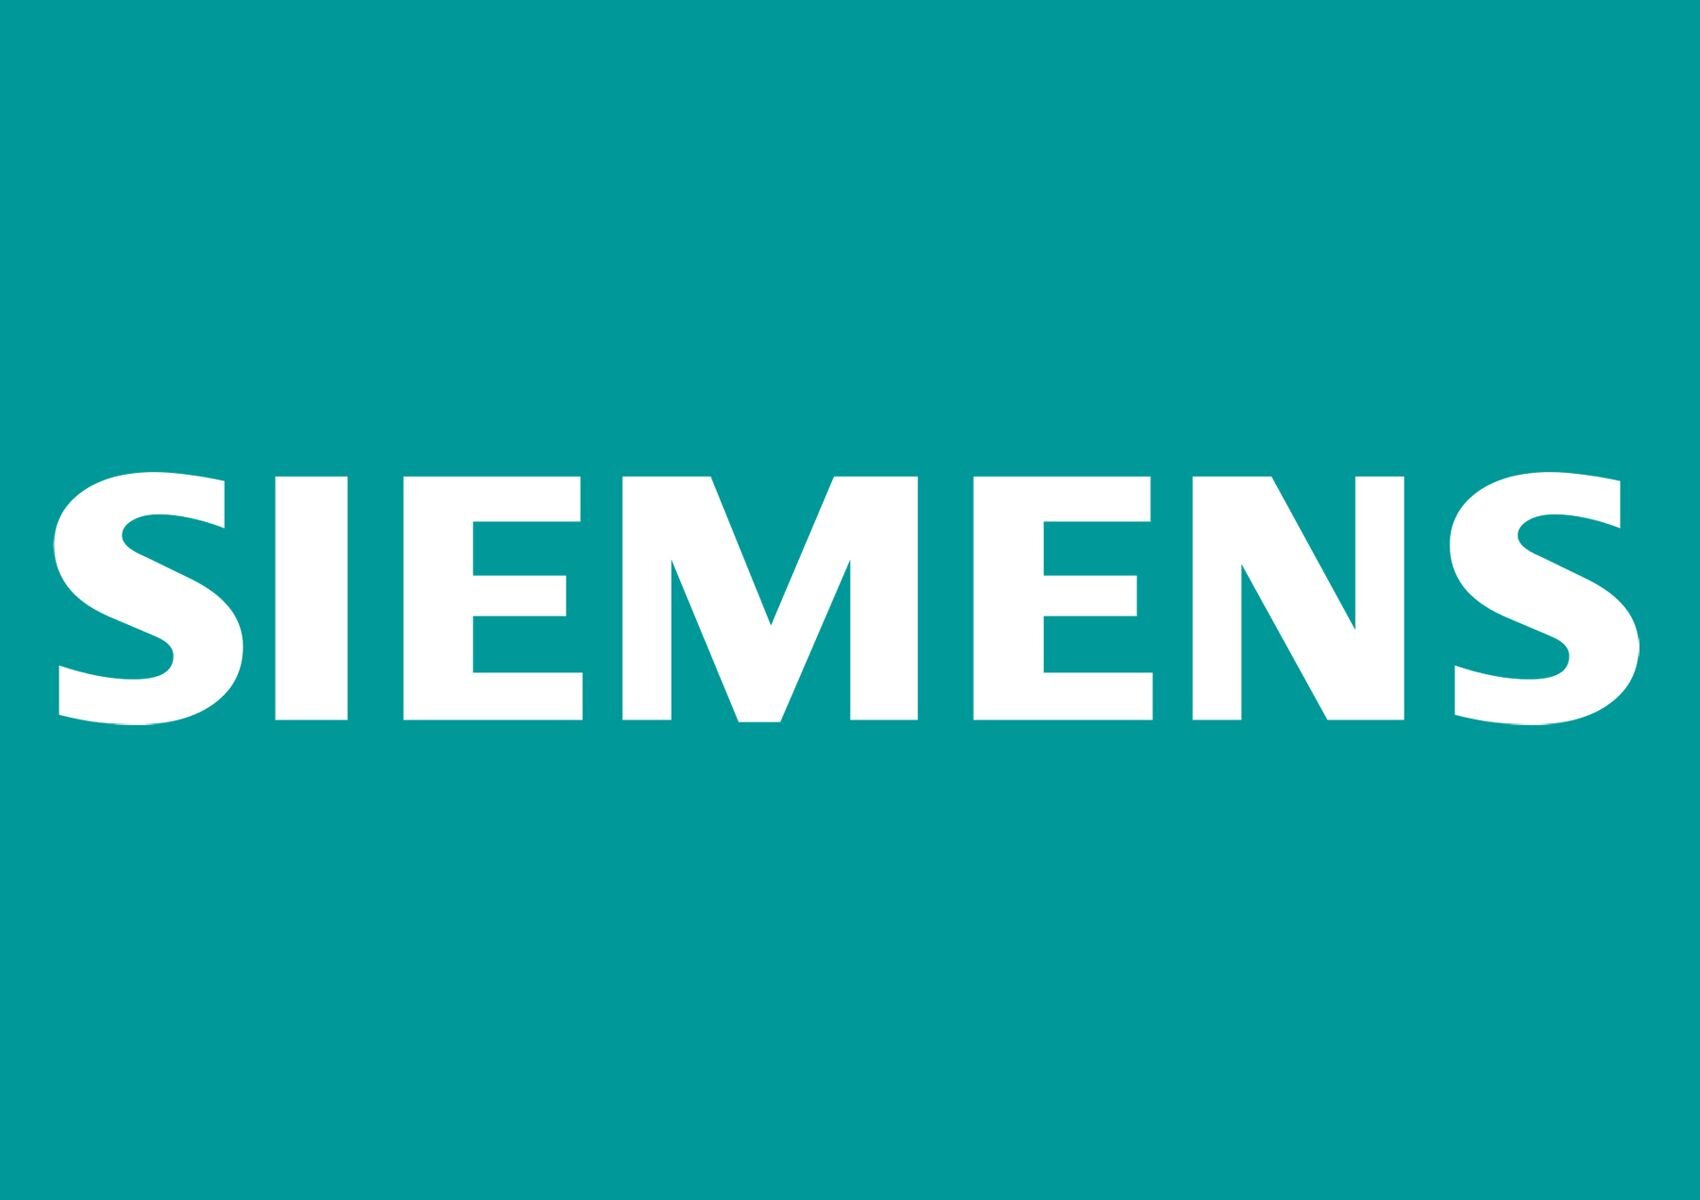 Siemens.jpg